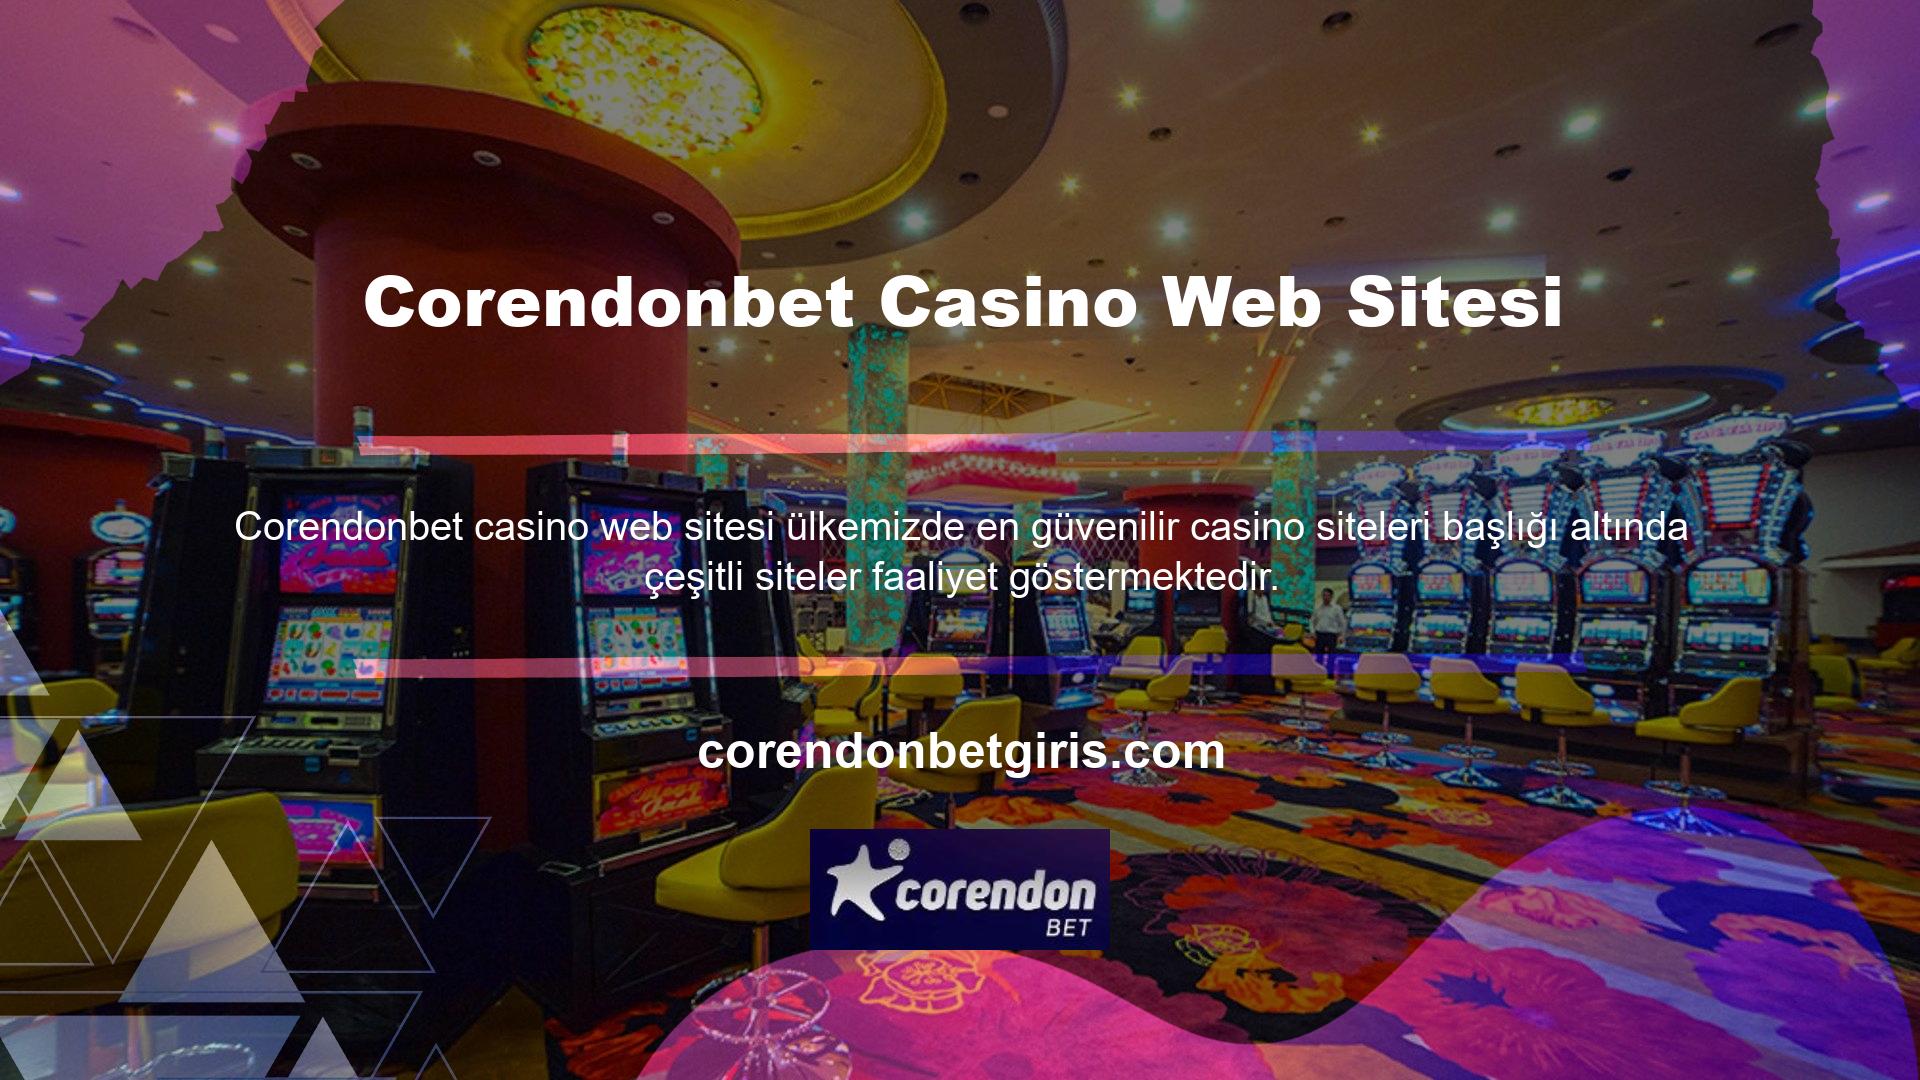 Ülkemizde birçok bahisçi aktif olarak casino oyunları oynadığı için ülkemizde de casino siteleri aktif olarak işletilebilmektedir